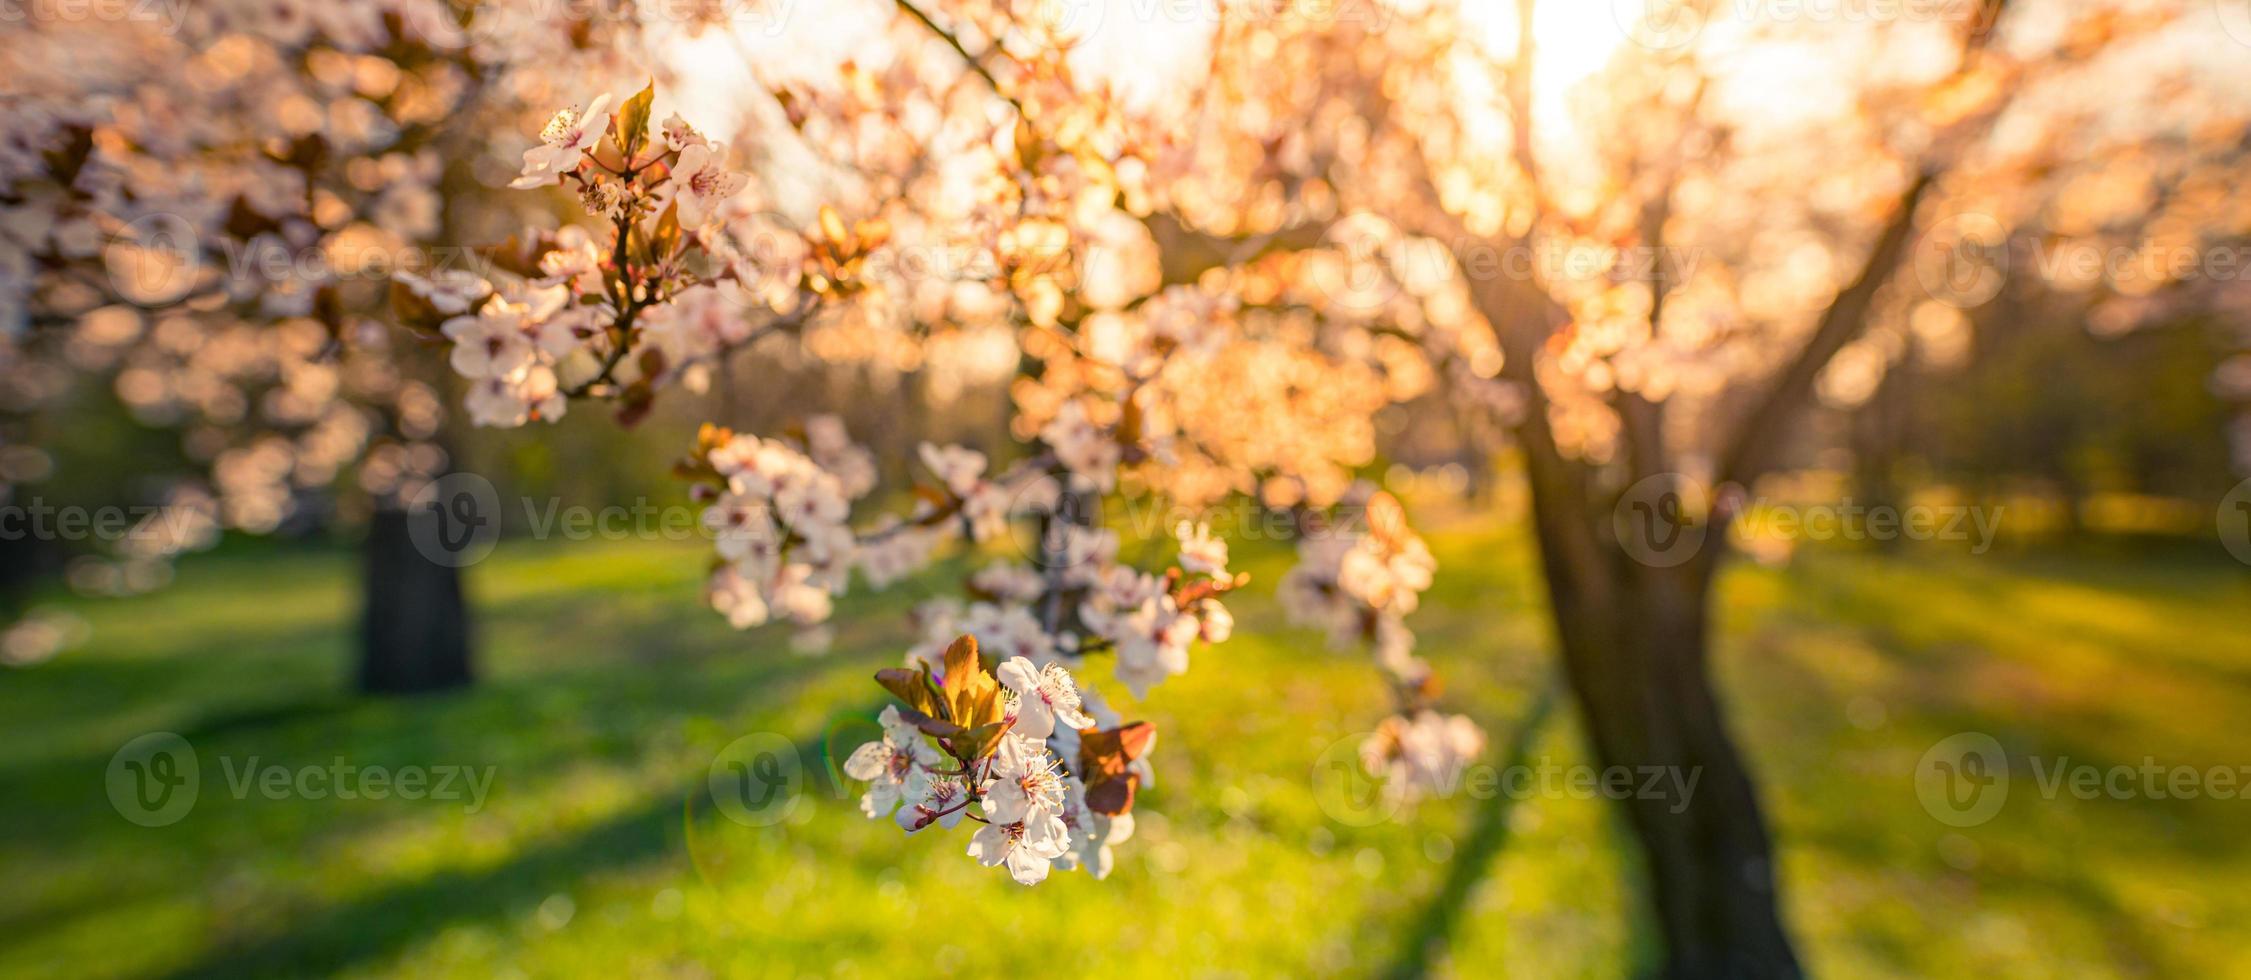 zonsondergang over bloeiende kers op vage liefdesachtergrond in het voorjaar op de natuur buitenshuis. roze sakura bloemen, verbazingwekkende kleurrijke dromerige romantische artistieke lente zonsopgang natuur, banner ontwerp foto